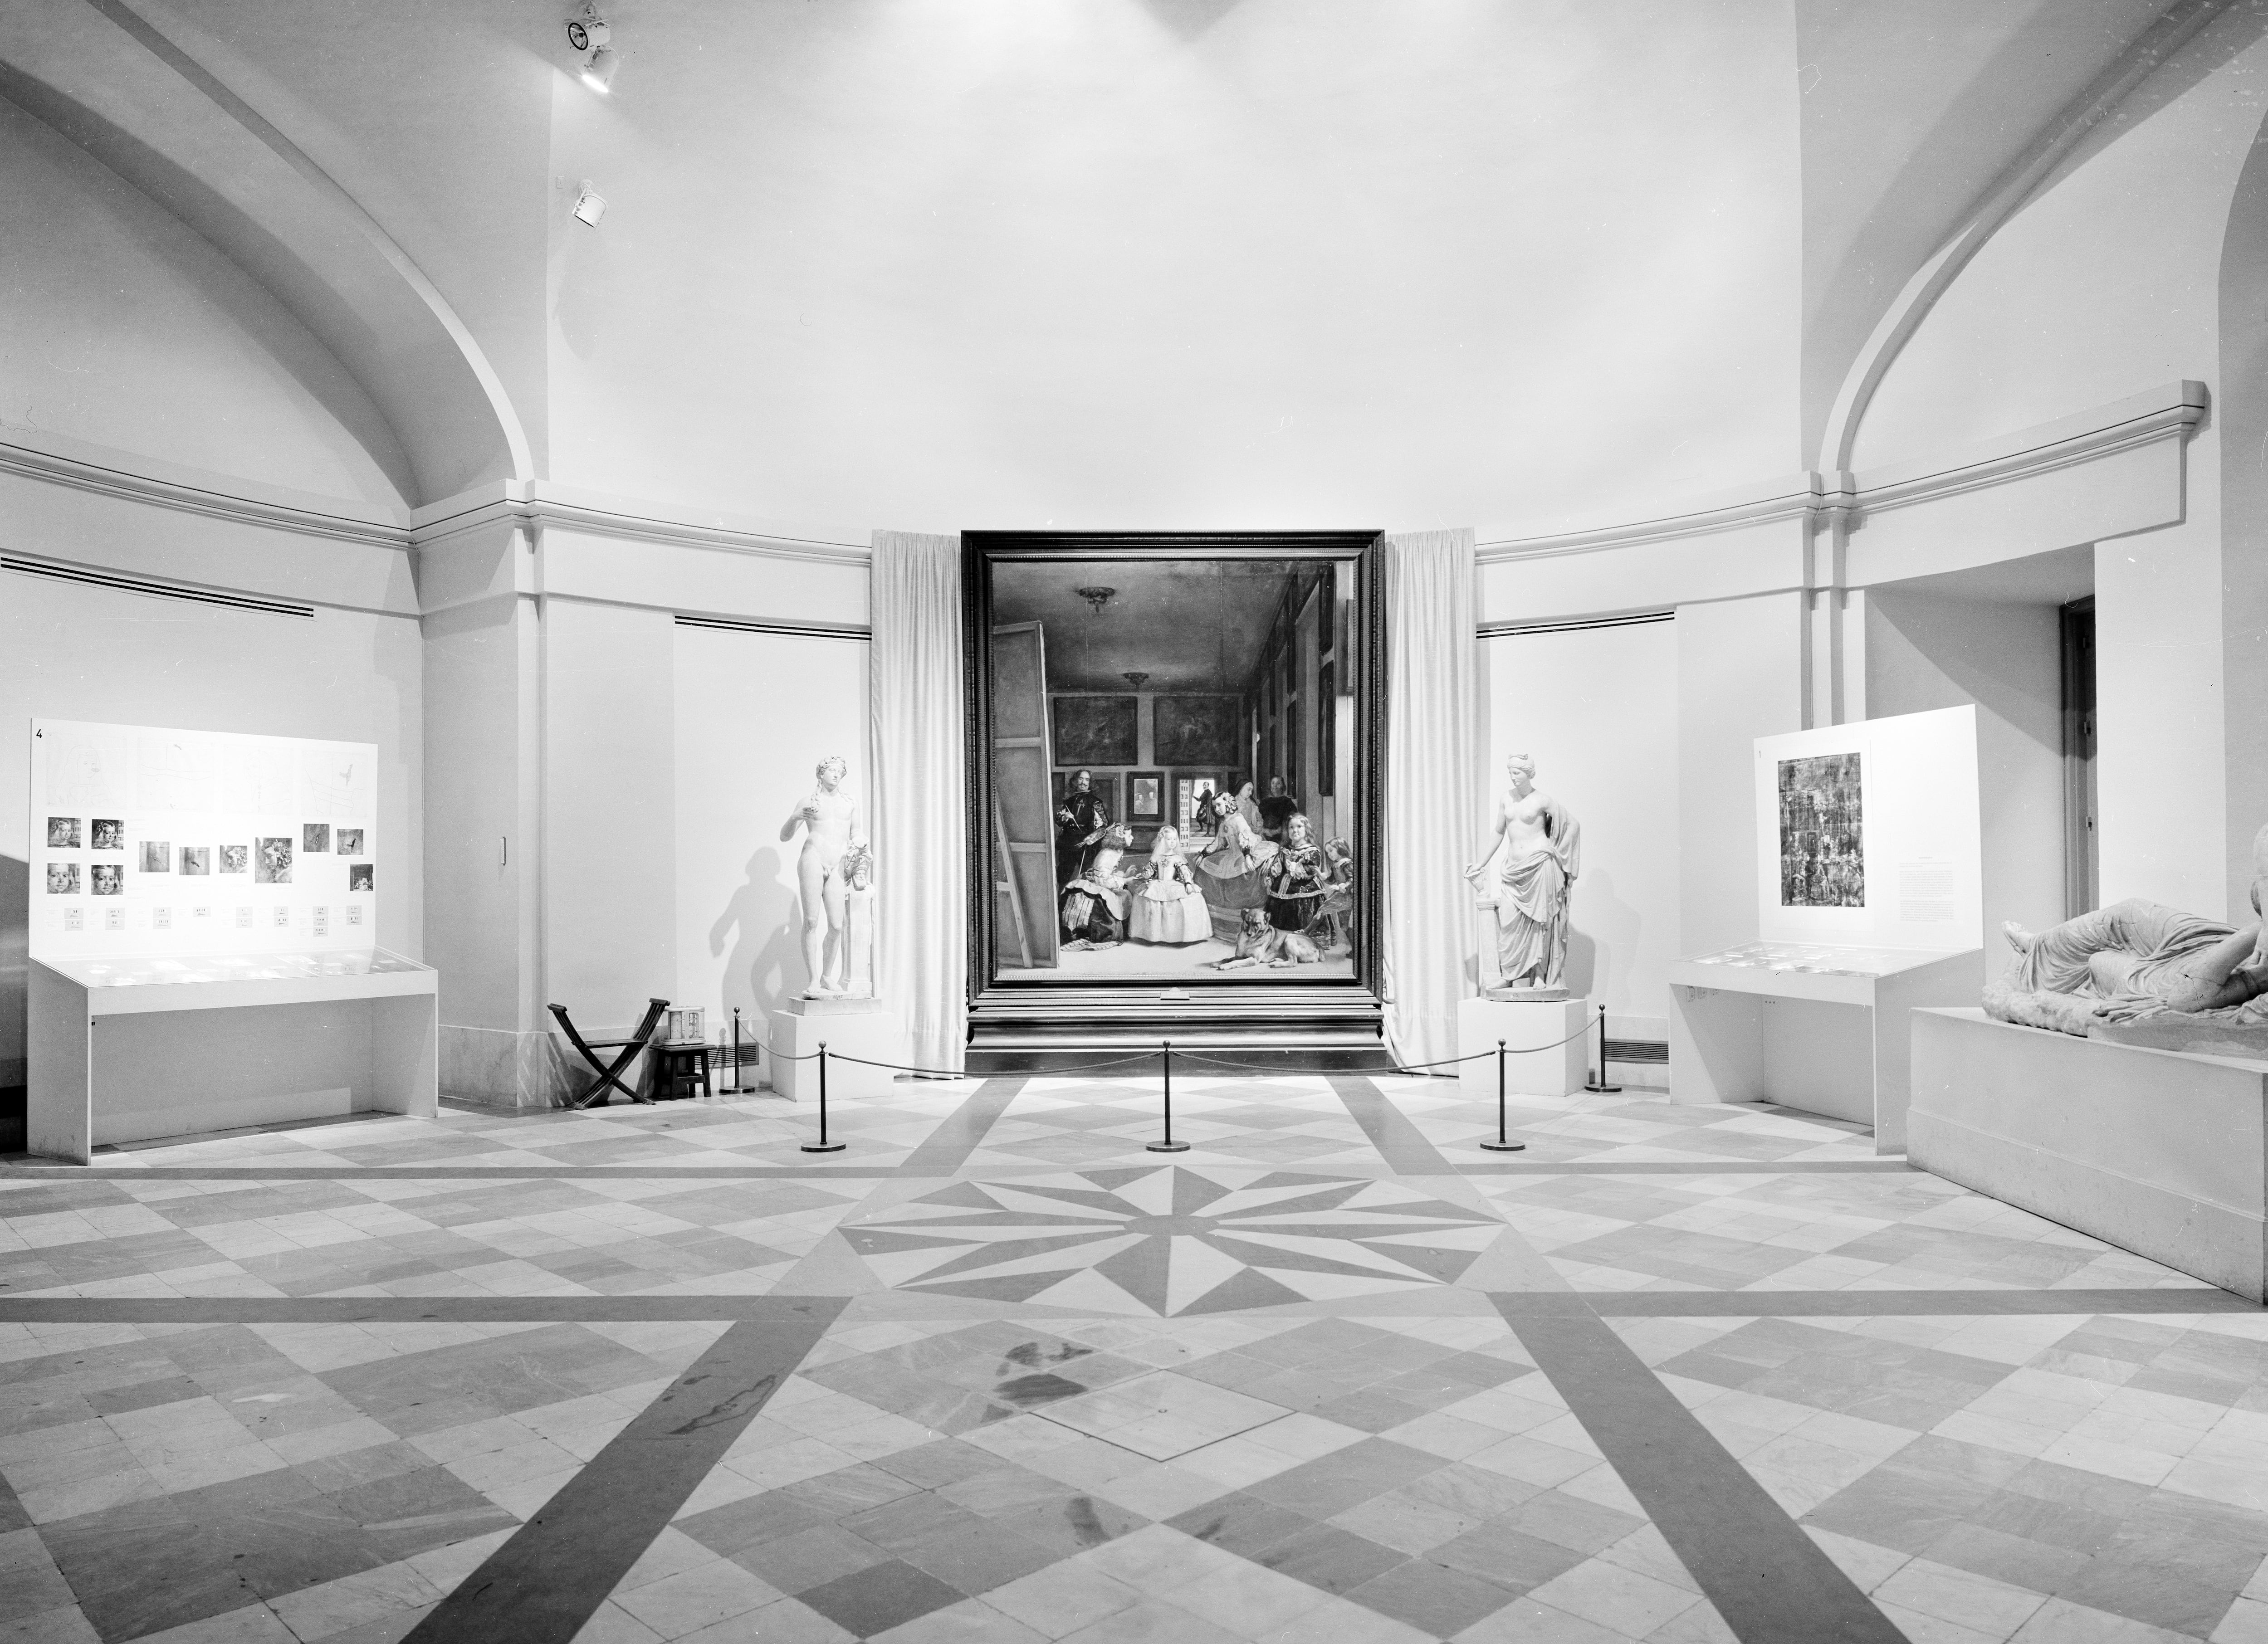 La instalación especial que el Prado preparó para 'Las meninas' tras su restauración, en la sala 74 del museo.